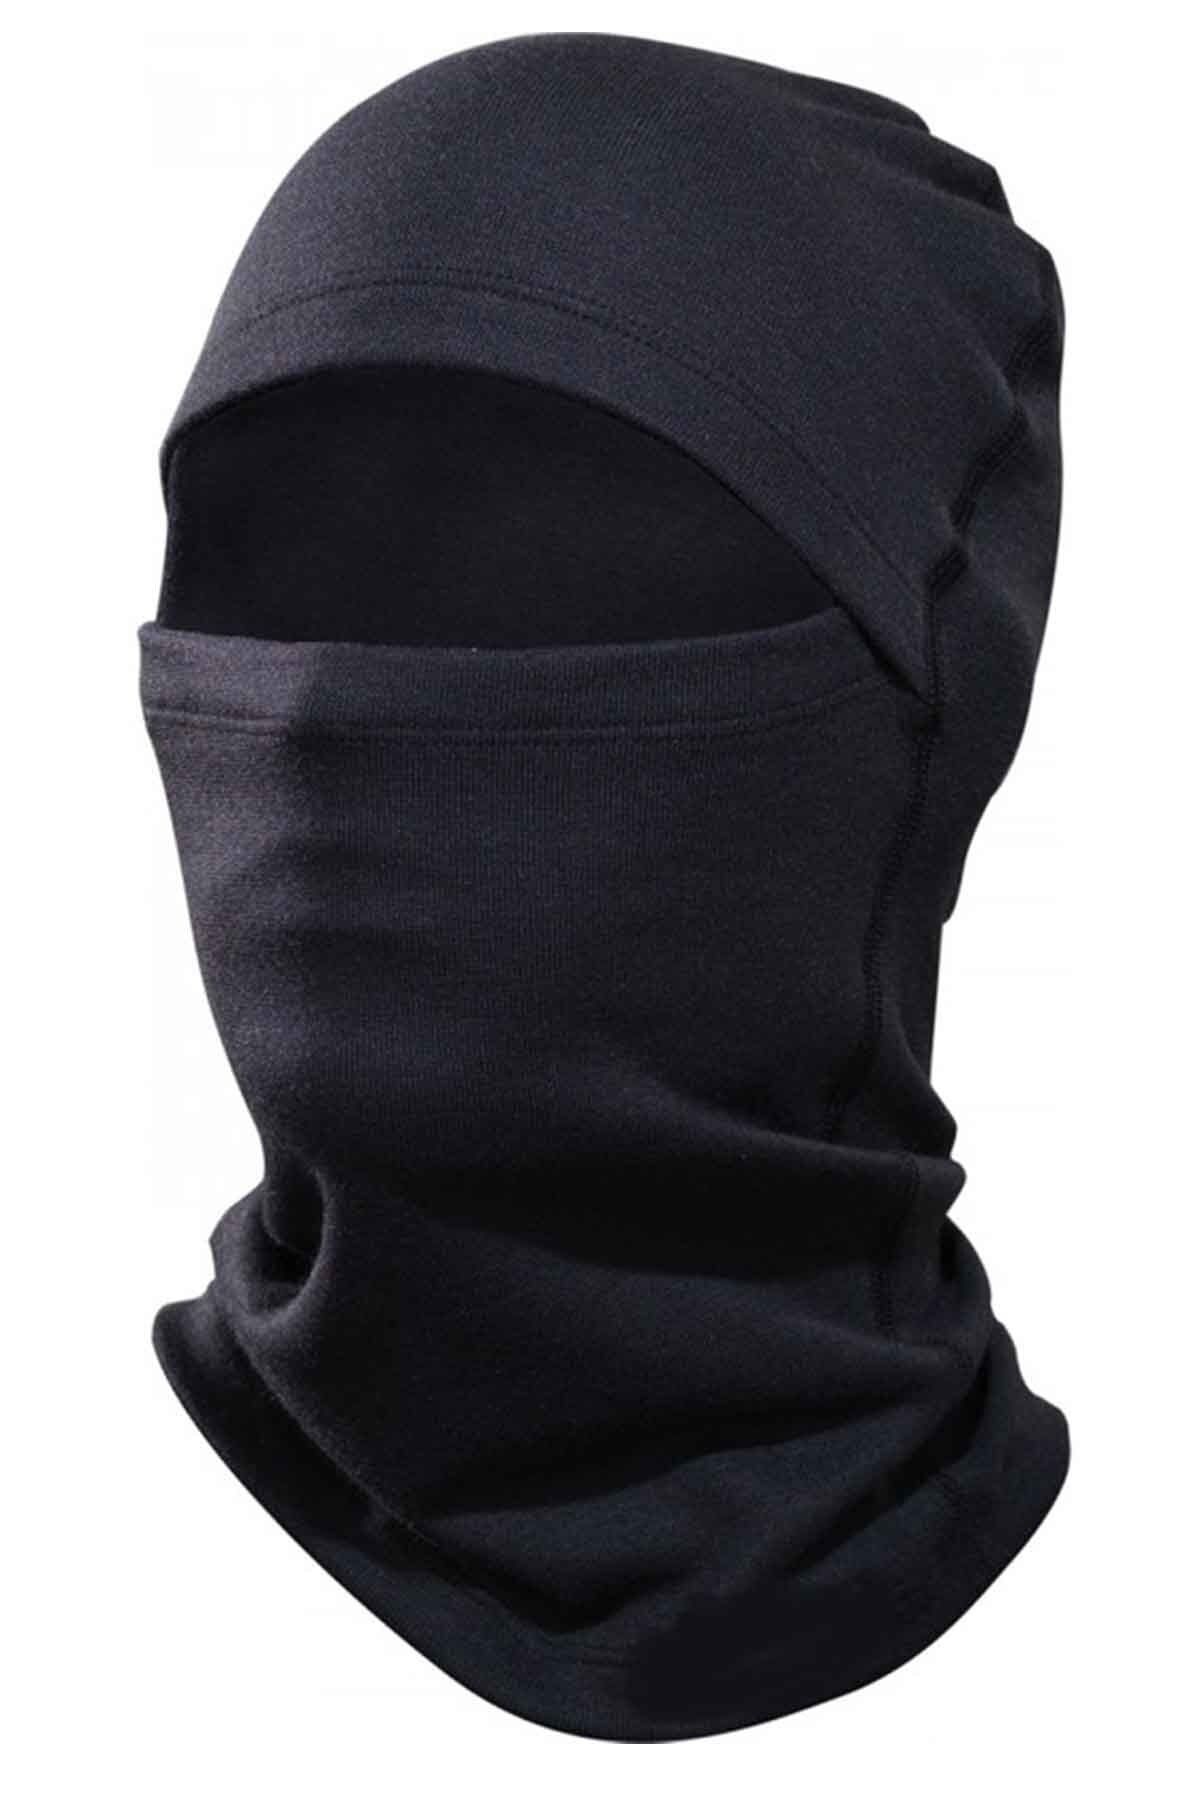 Genel Markalar Termal Siyah Kar Maskesi Fonksiyonel Kışlık Sıcak Tutan Maske